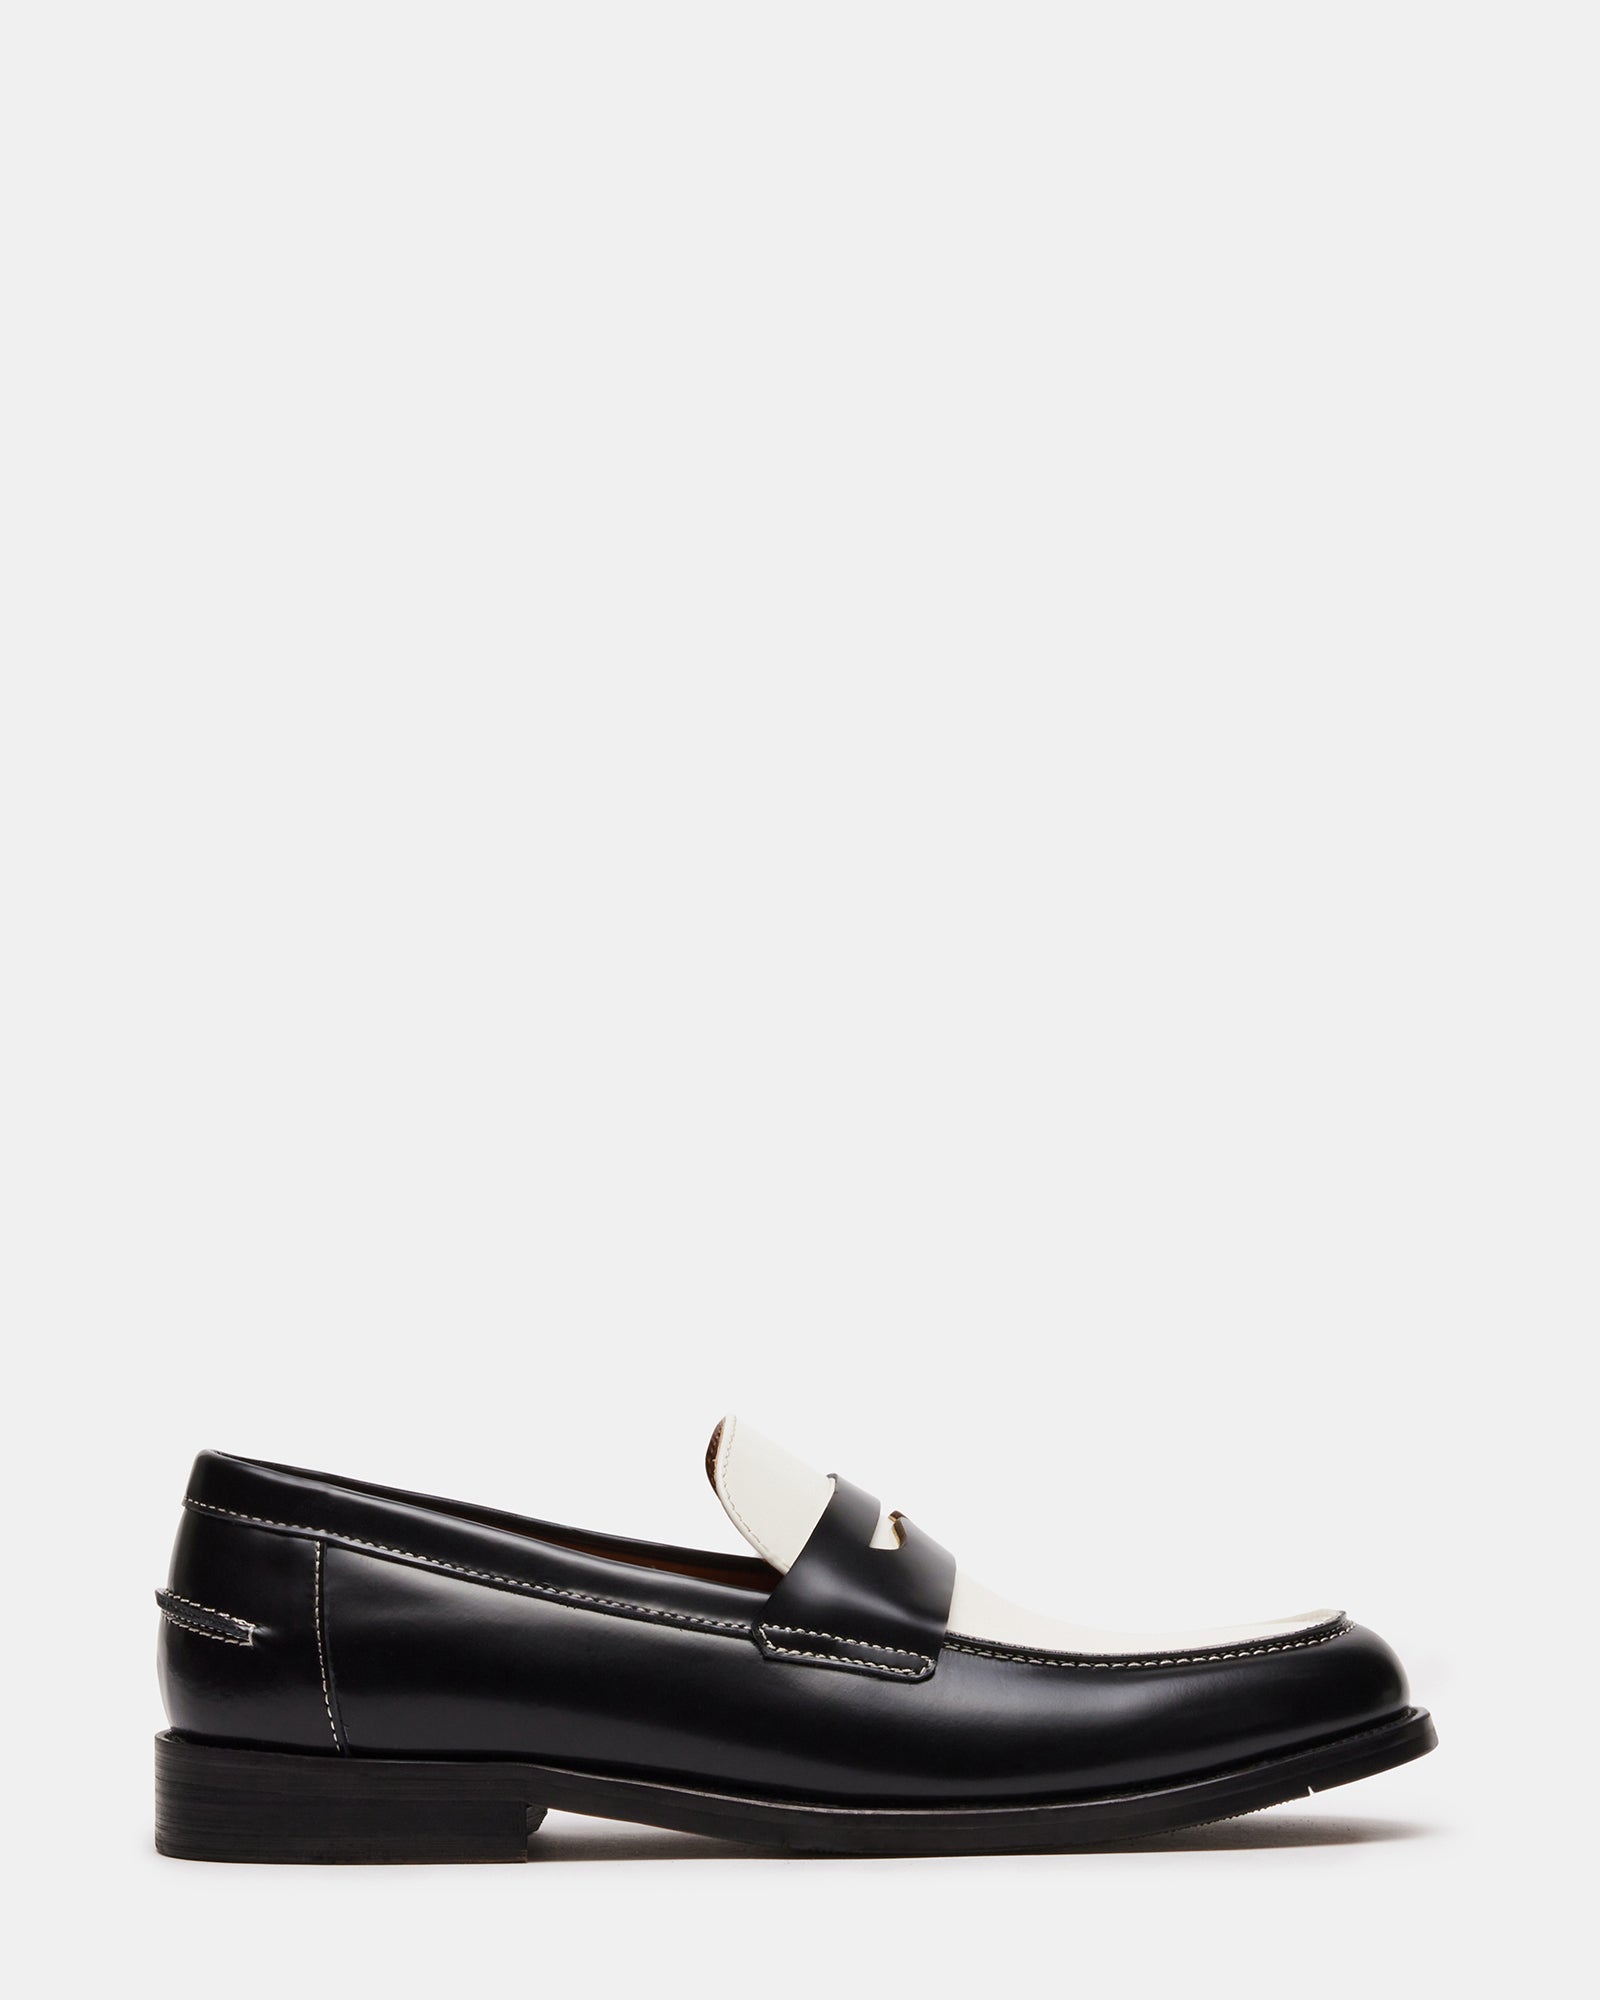 NATAN Black White Leather Dress Loafer | Men's Loafers – Steve Madden